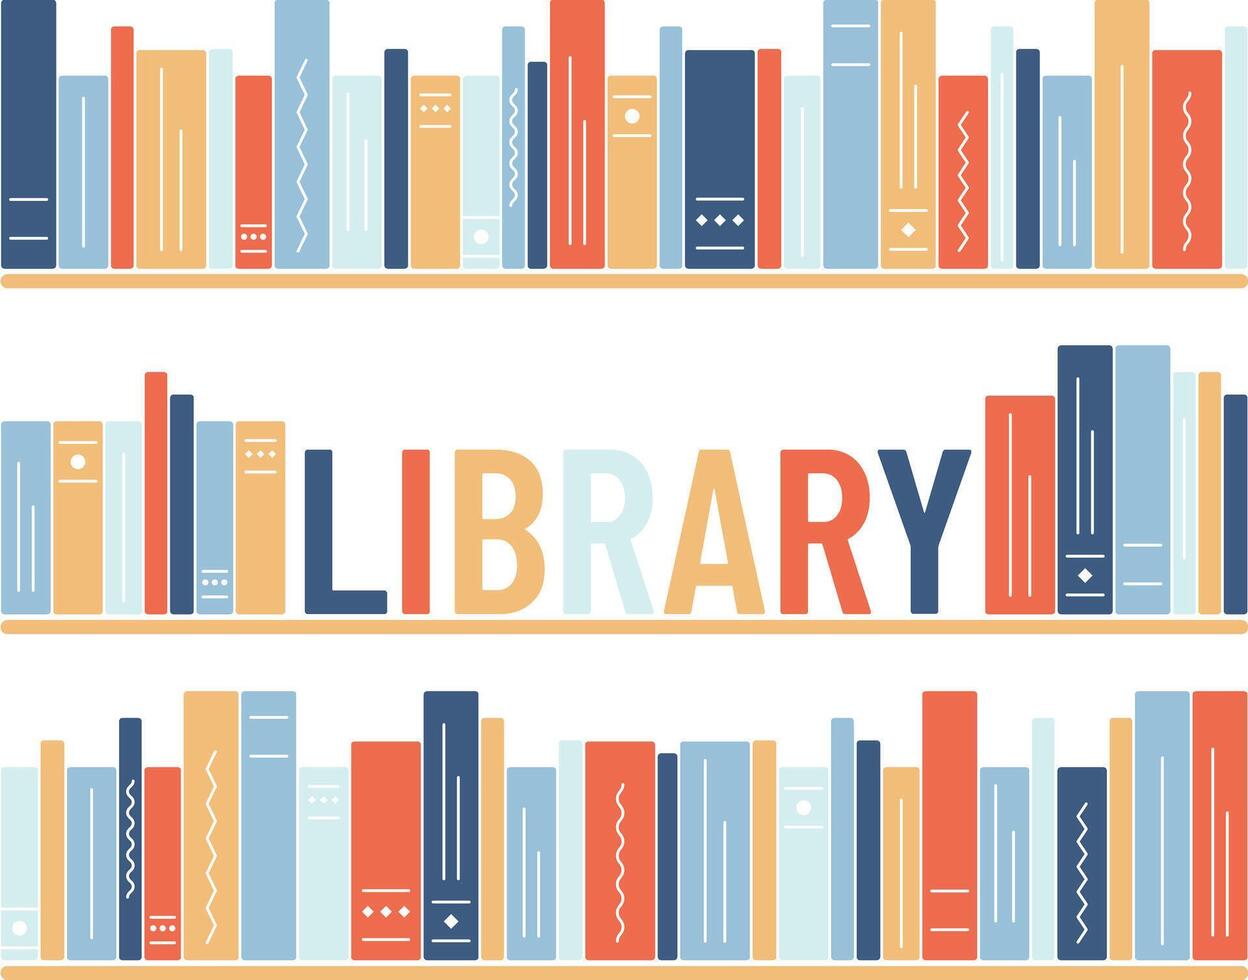 boekenkasten met de woord bibliotheek Aan een wit achtergrond. bibliotheek illustratie. literatuur, lezing, kennis, onderwijs. vector illustratie.